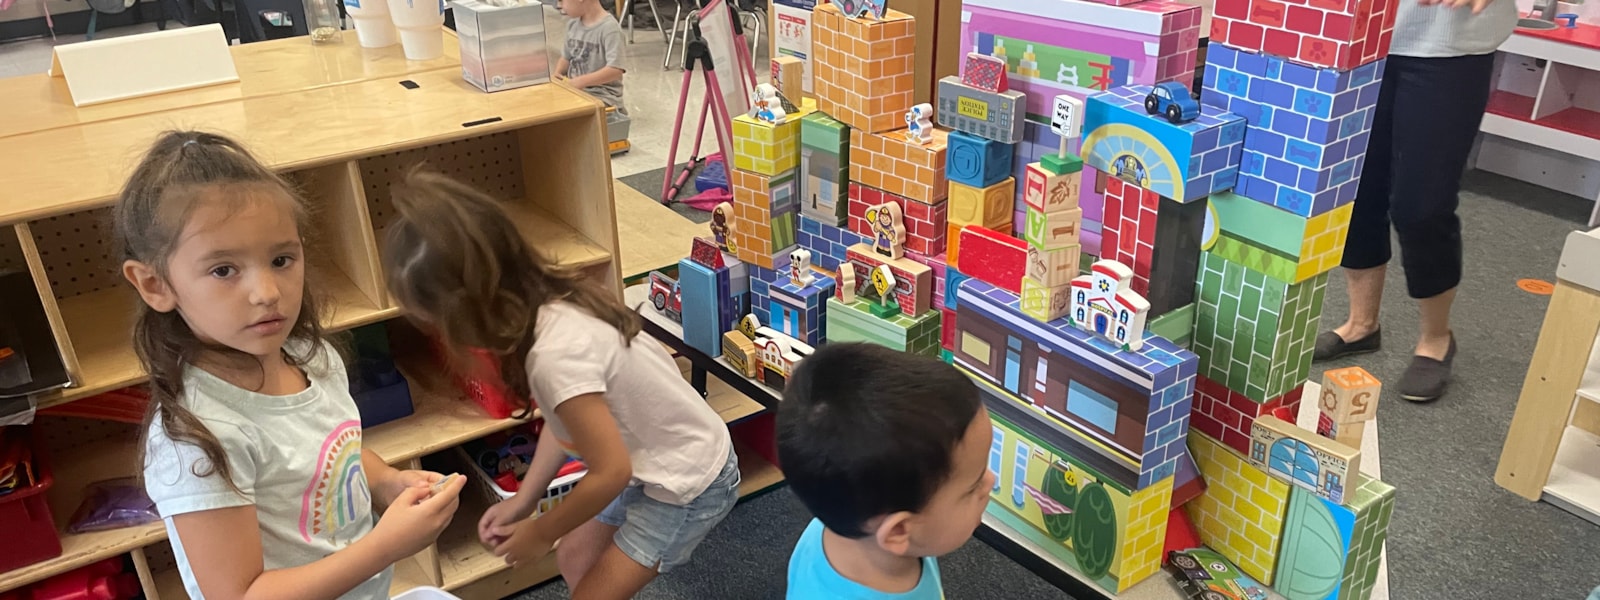 Preschool students creating a building